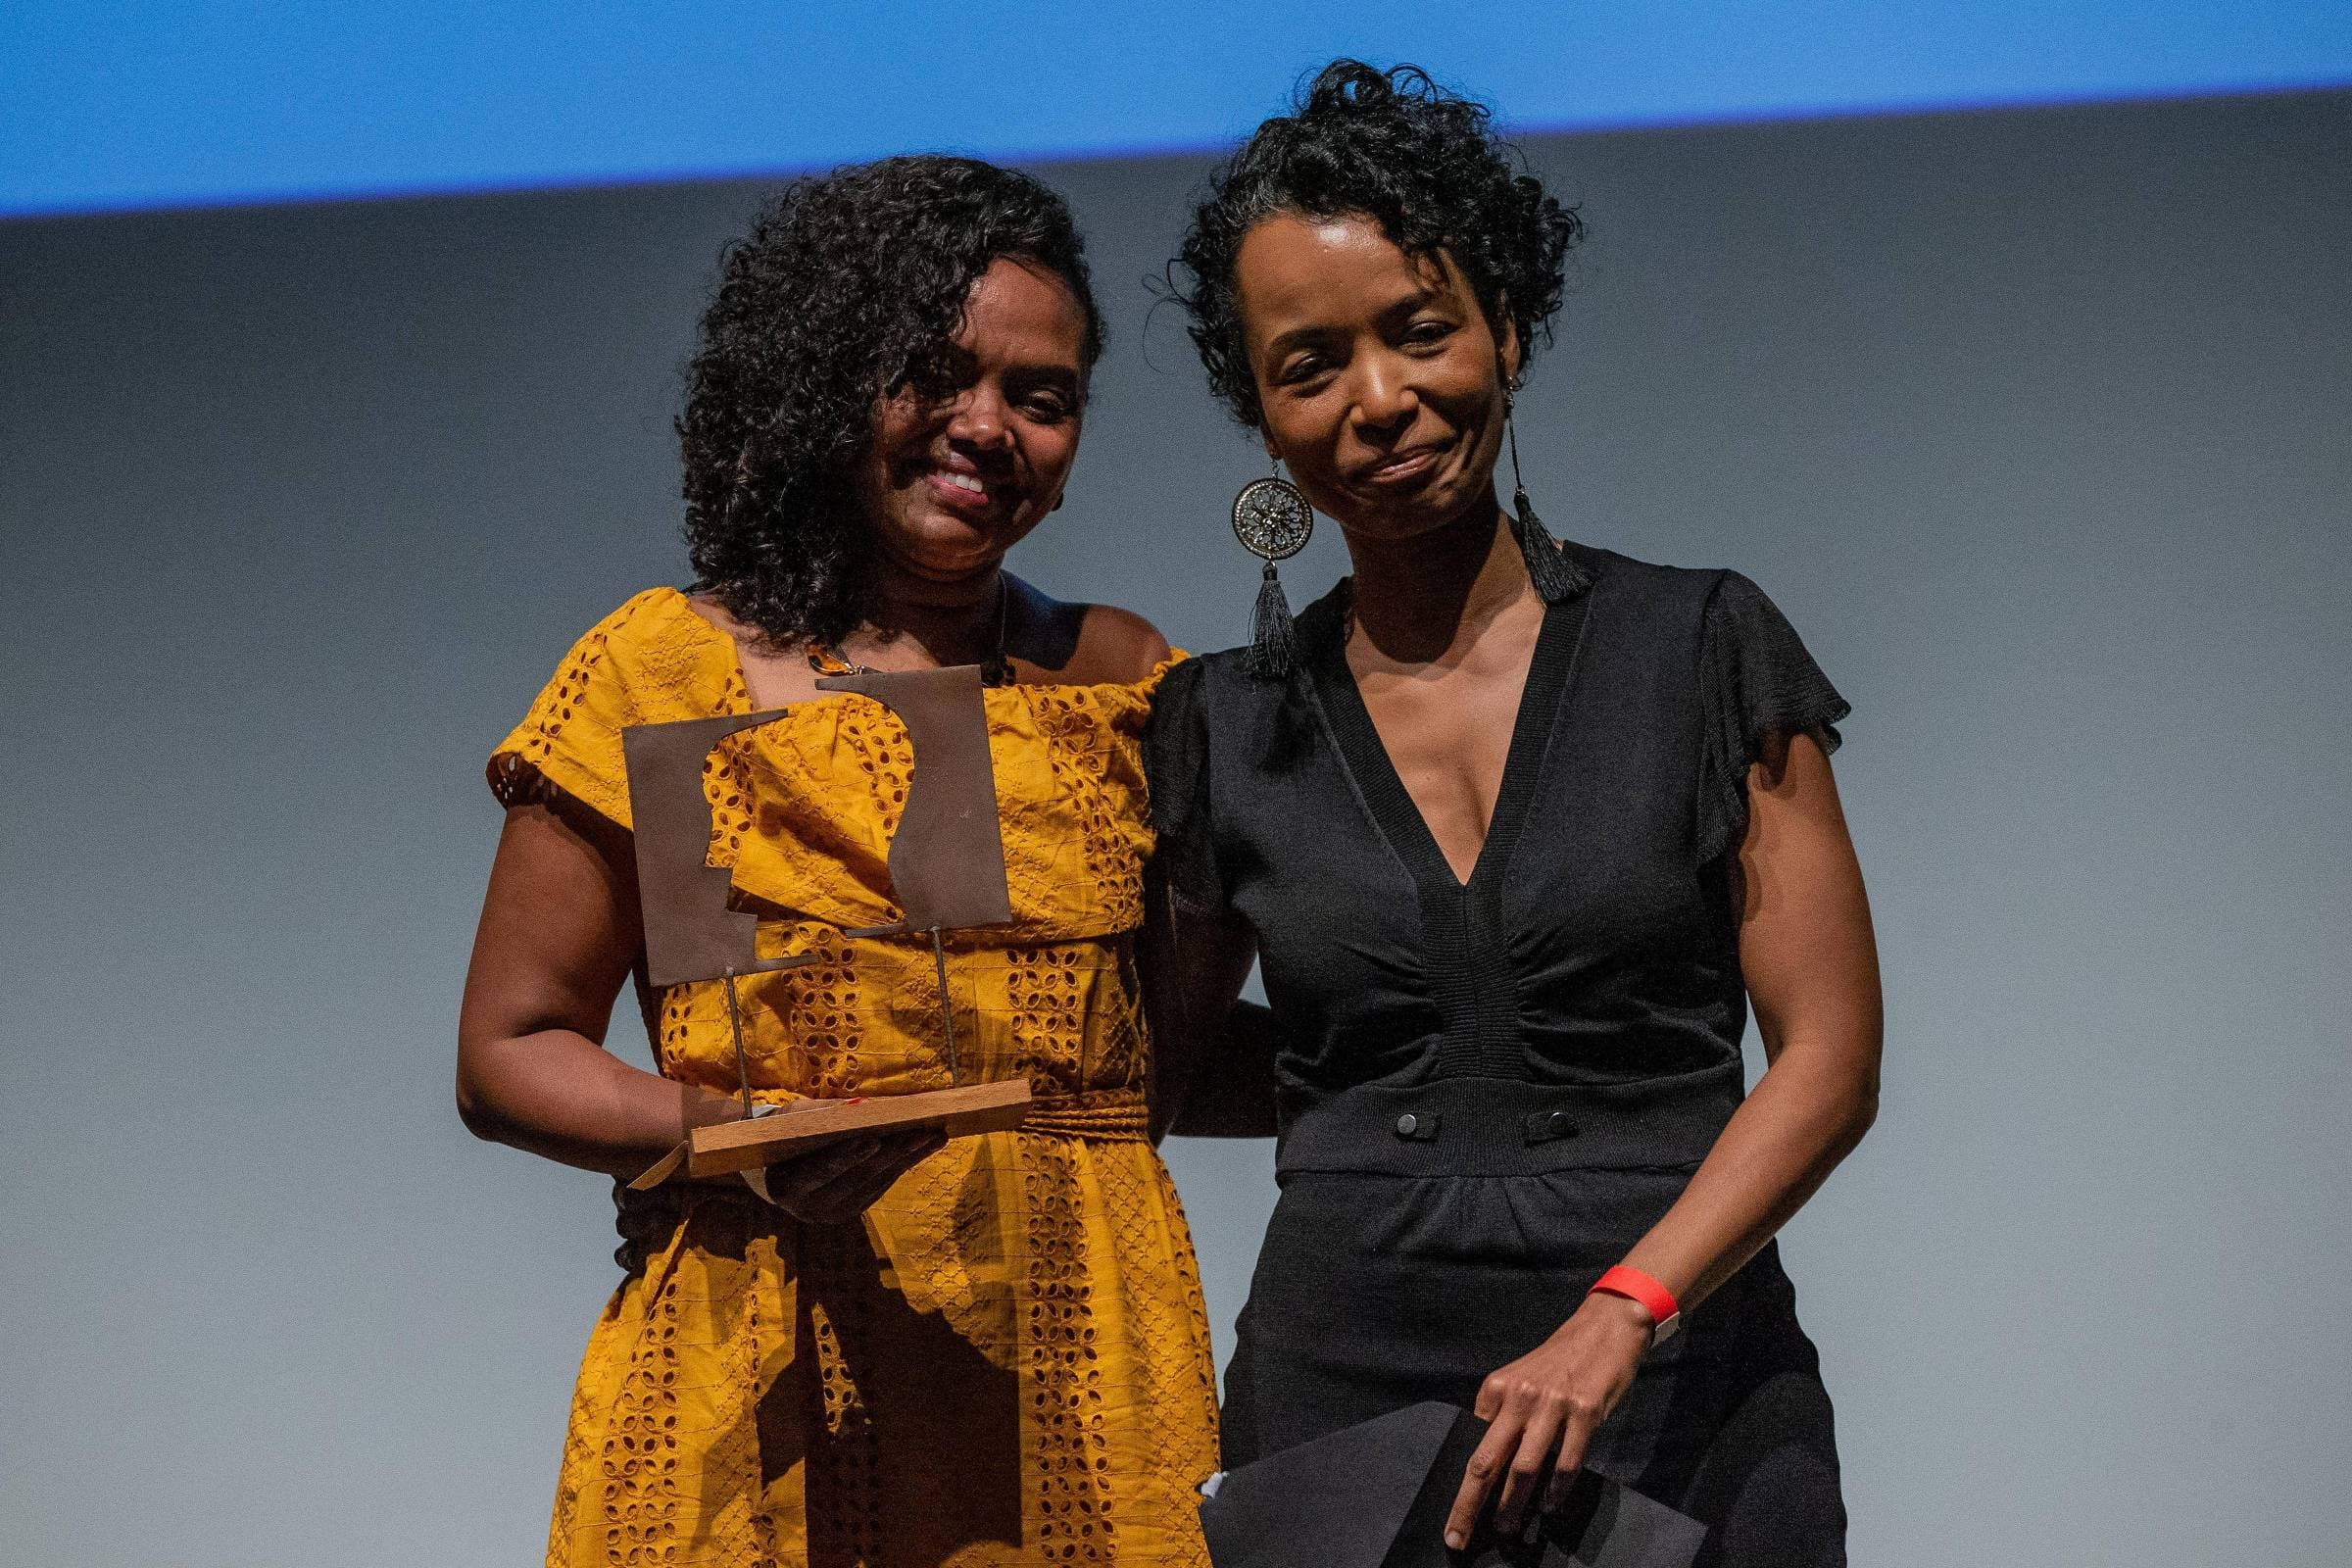 Fundadora da Feira Preta vence o Troféu Grão do Empreendedor Social 2019